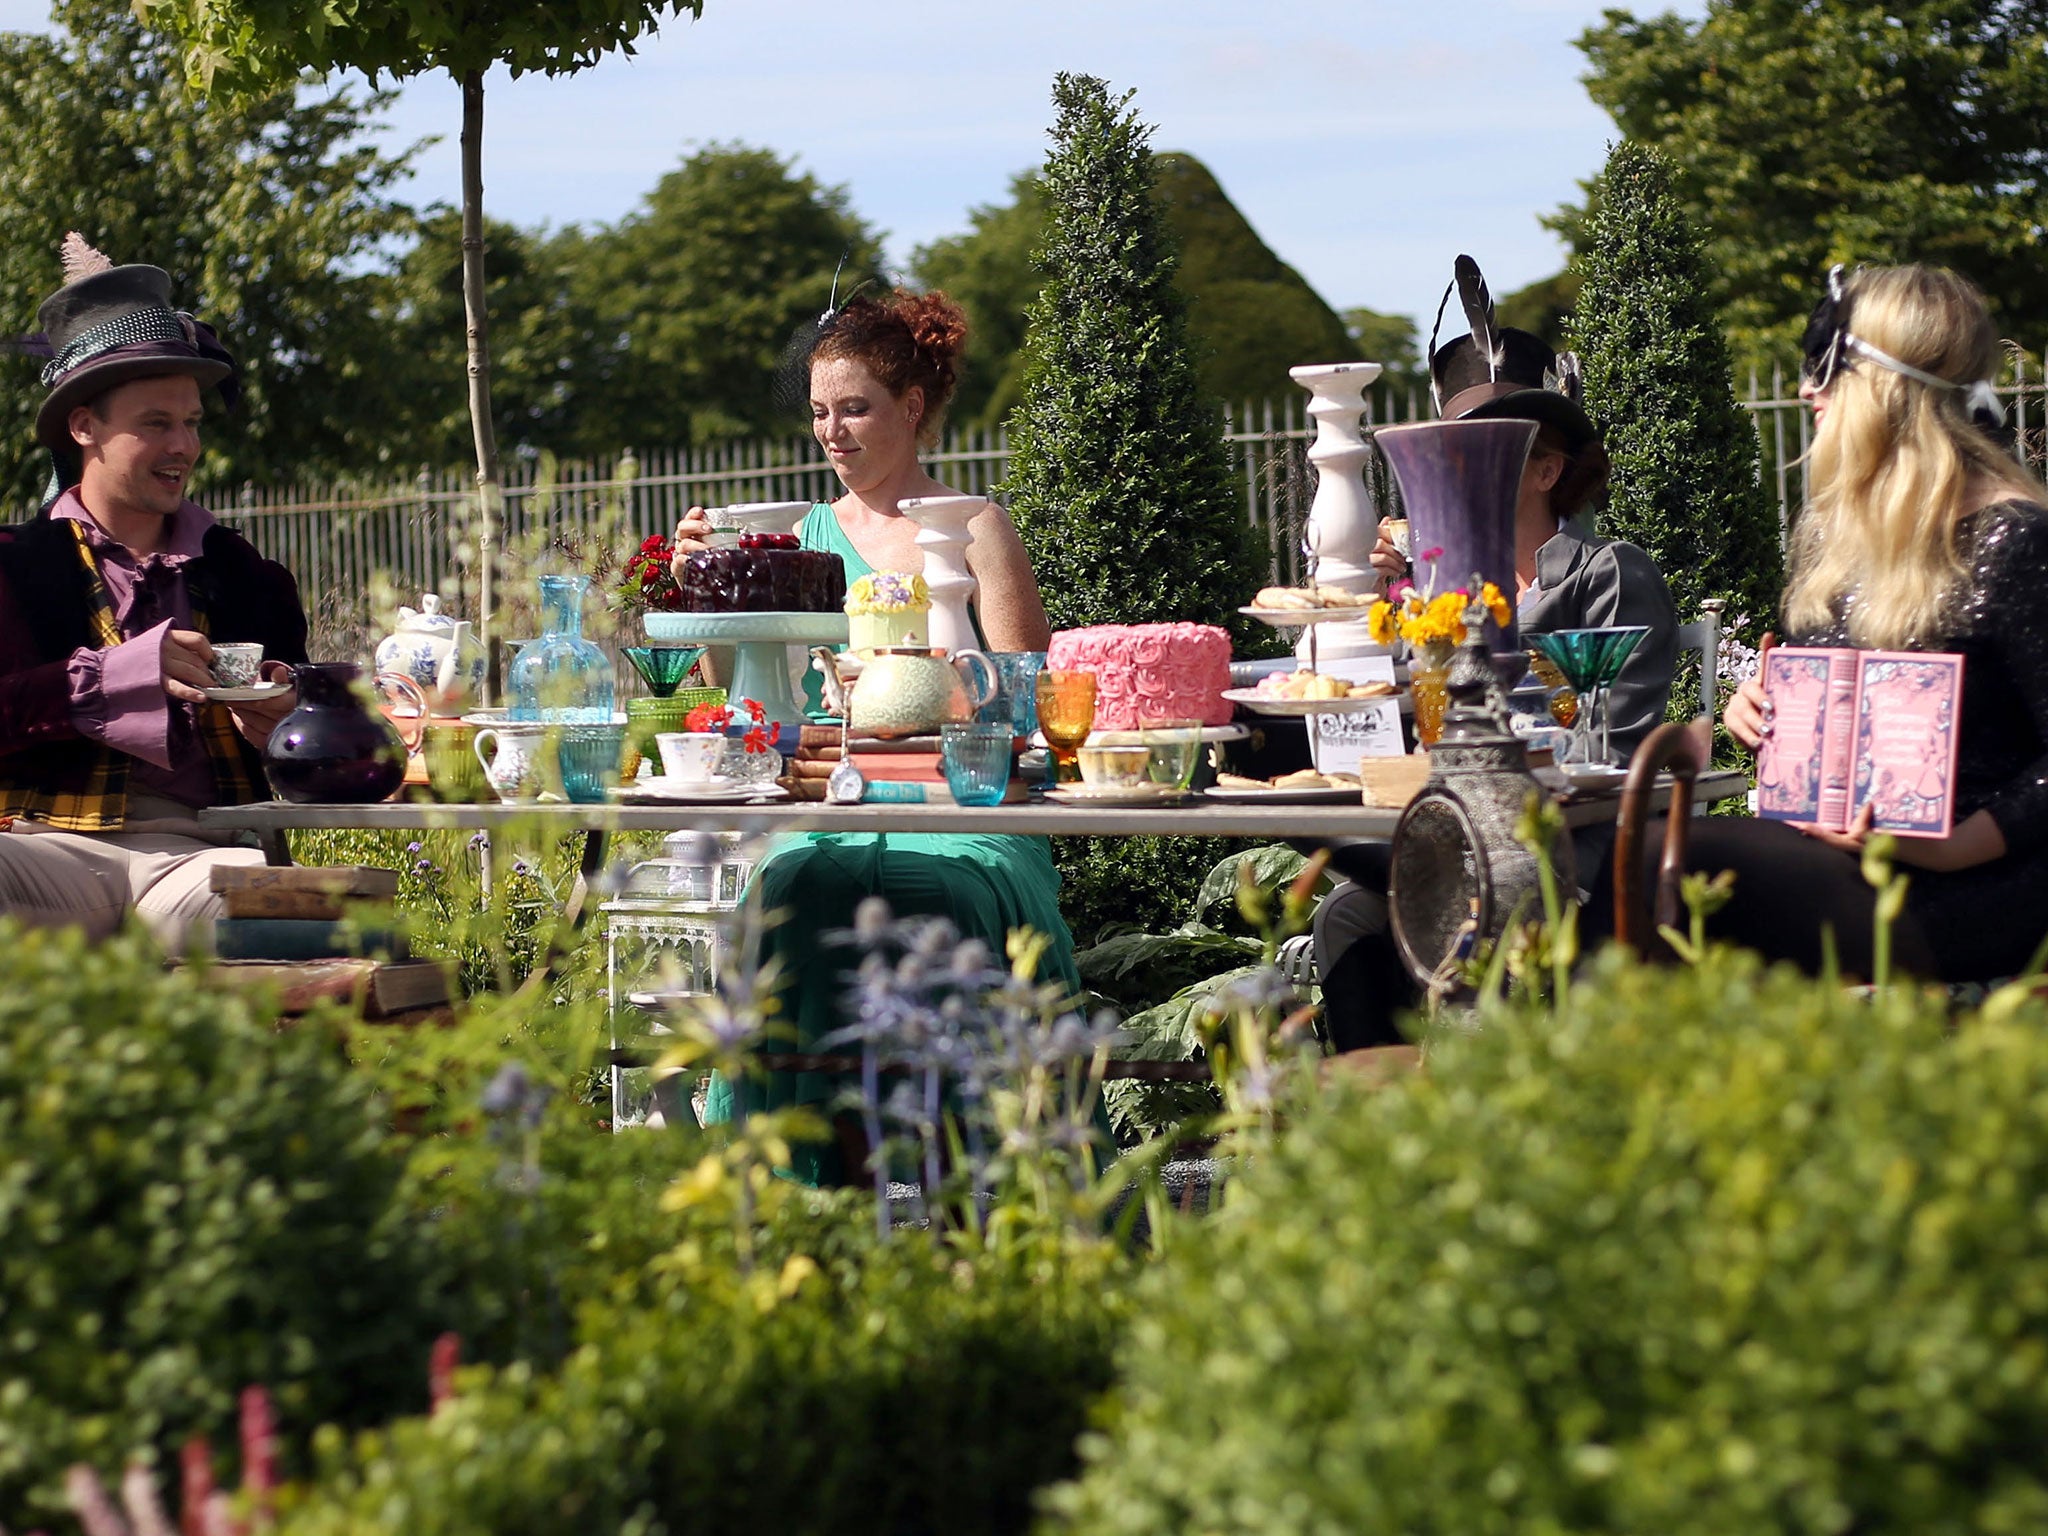 An ‘Alice in Wonderland’ garden at Hampton Court Palace Flower Show in Surrey